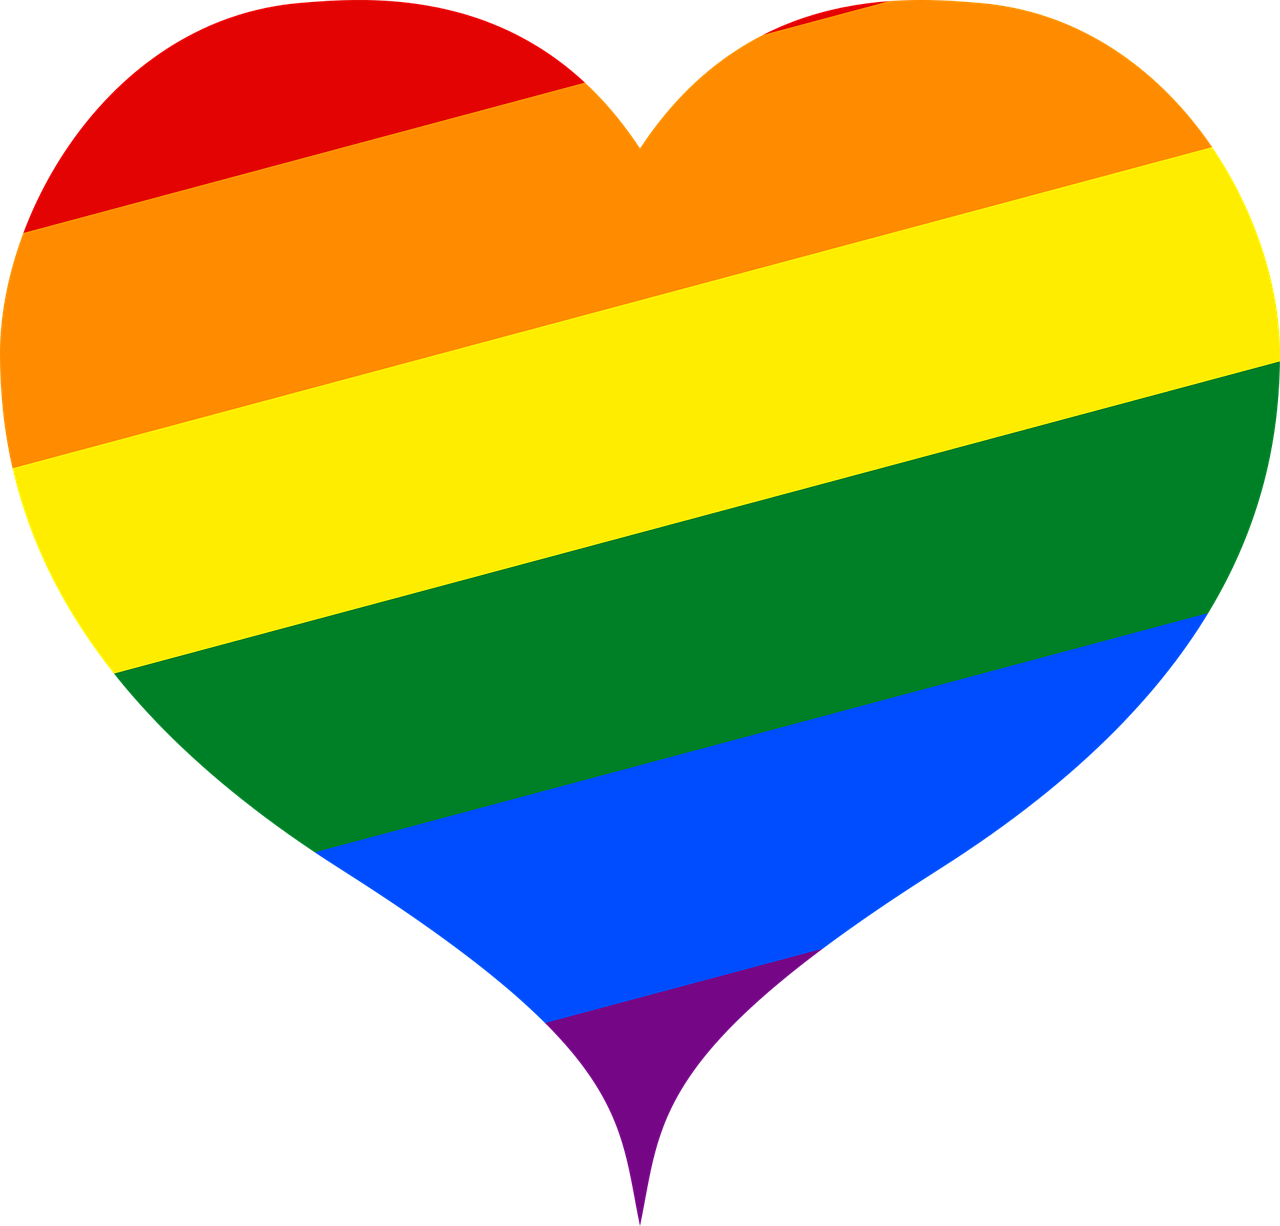 A rainbow heart.